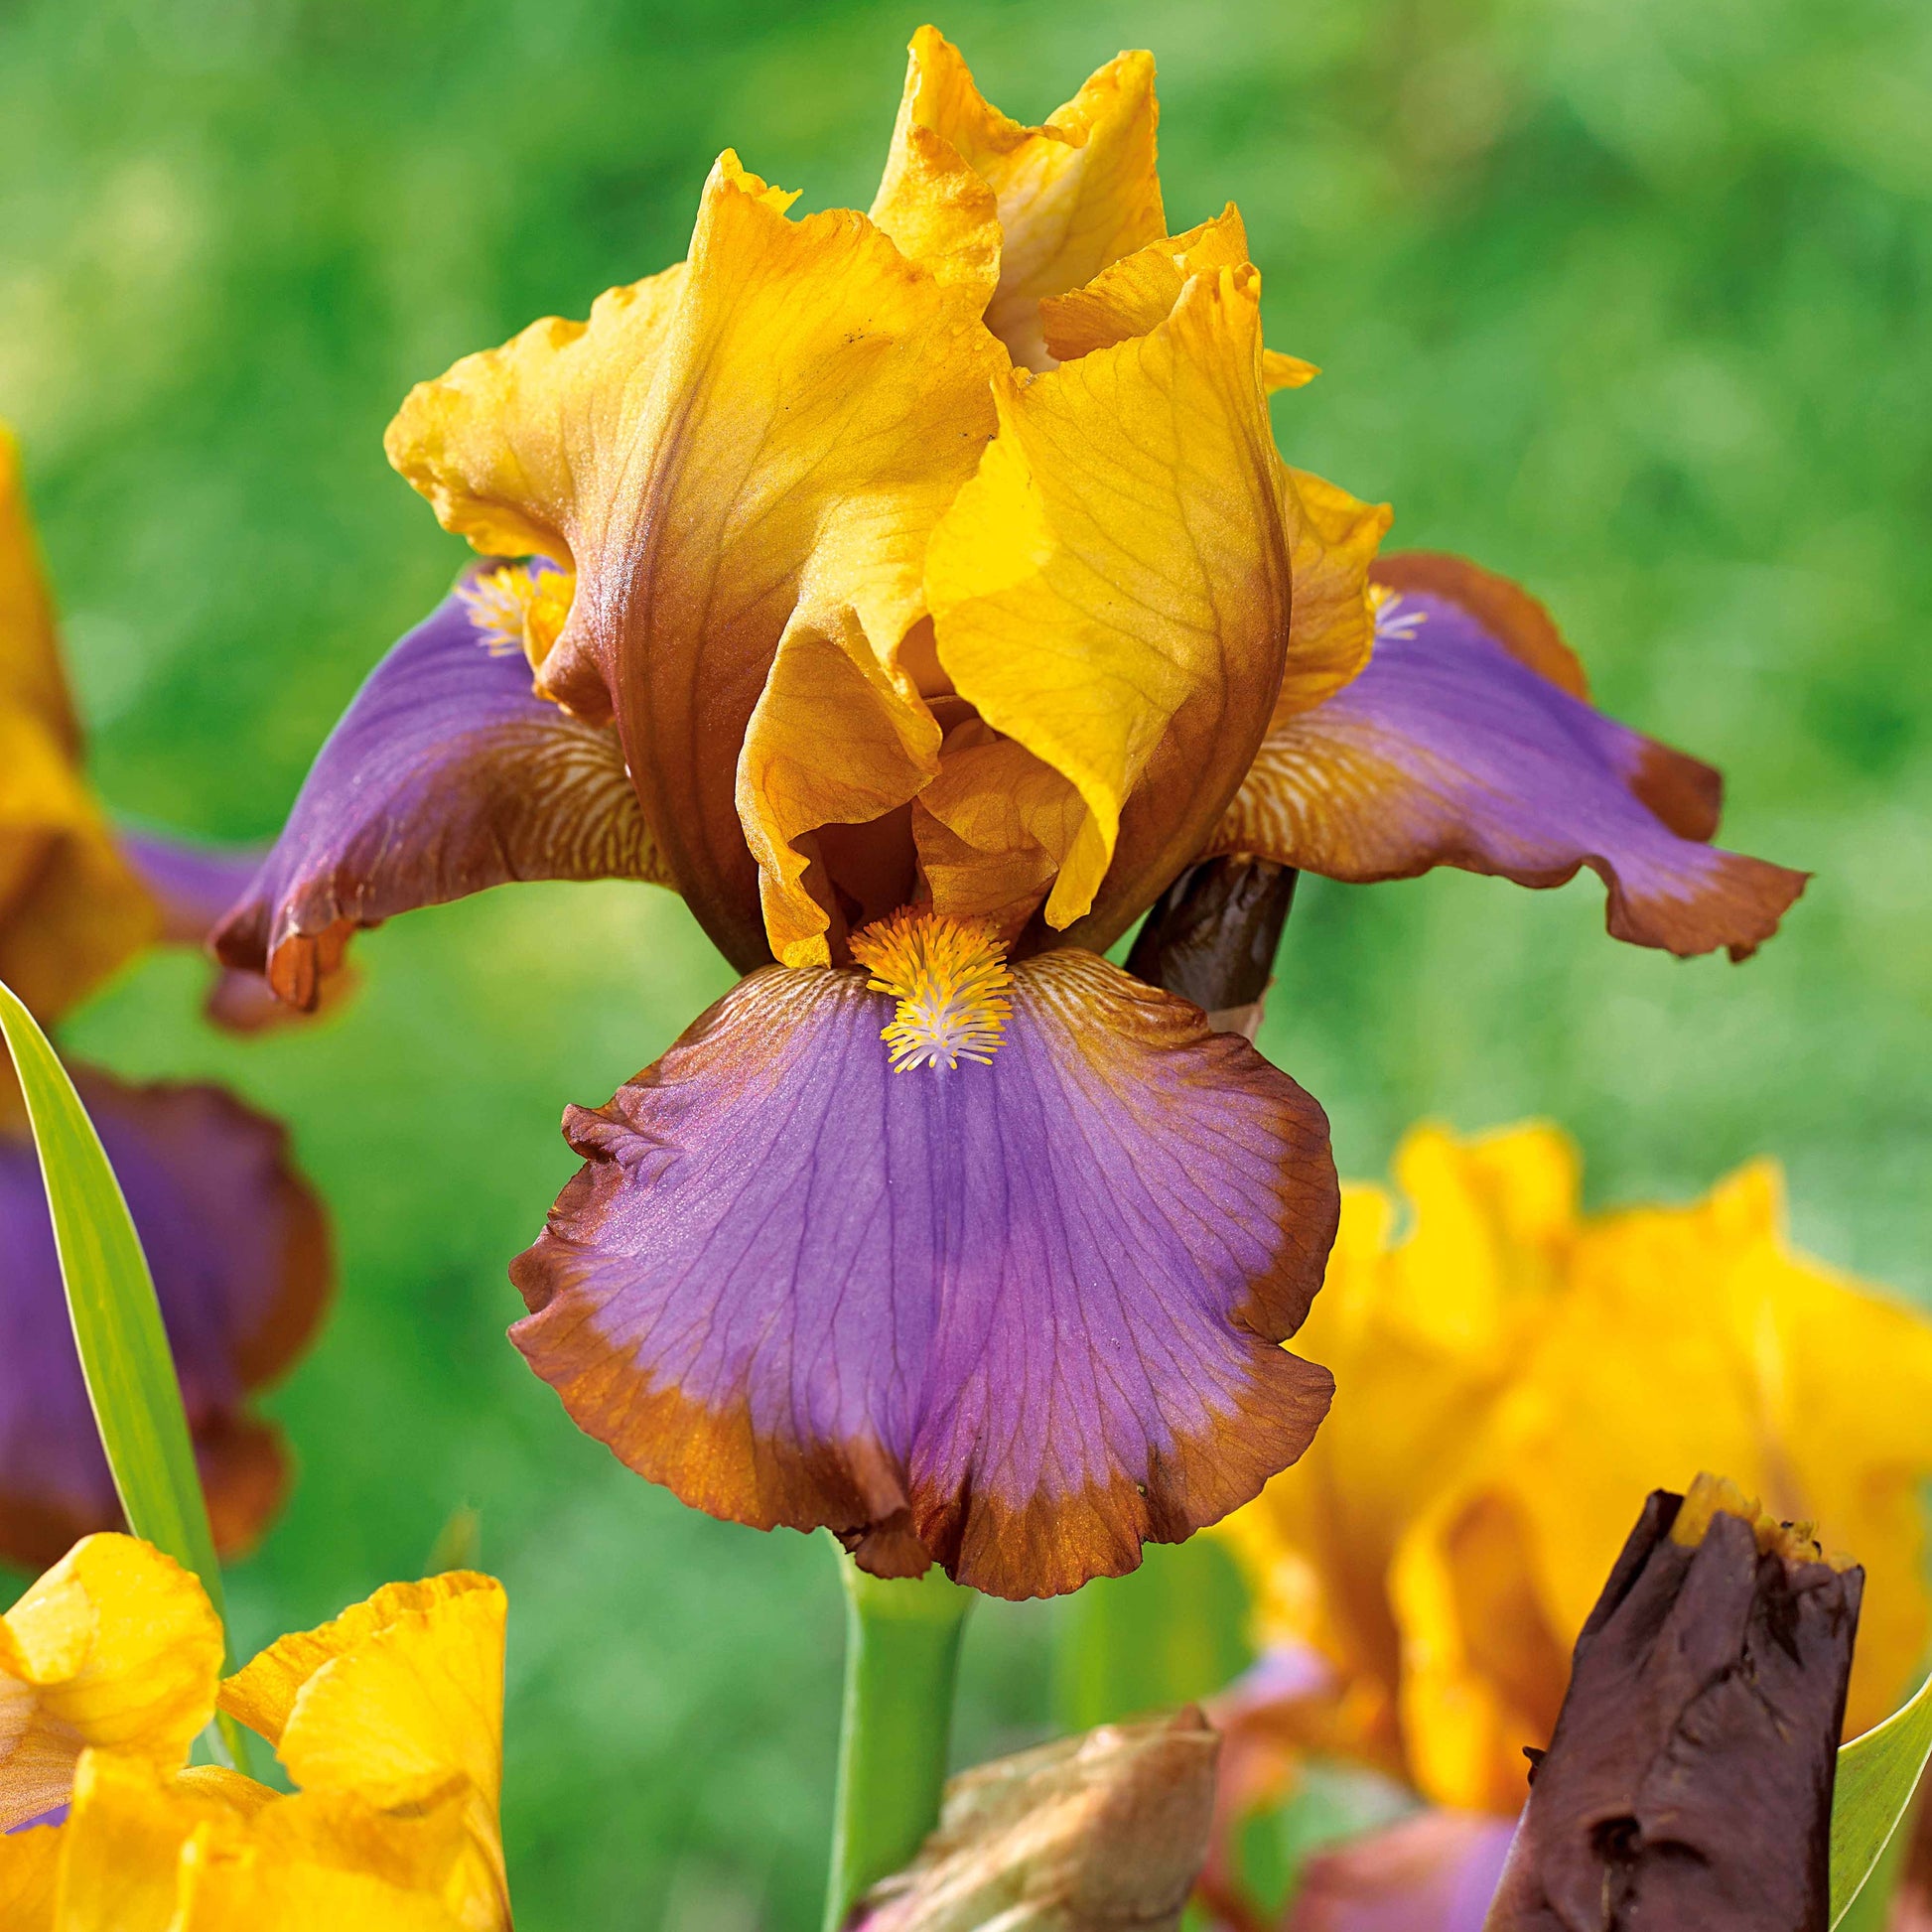 Sammlung von Garten-Iris: Lasso, Bordure, Sangreal. (x6) - Iris germanica  (2 lasso, 2 bordure, 2 sangreal) - Sträucher und Stauden